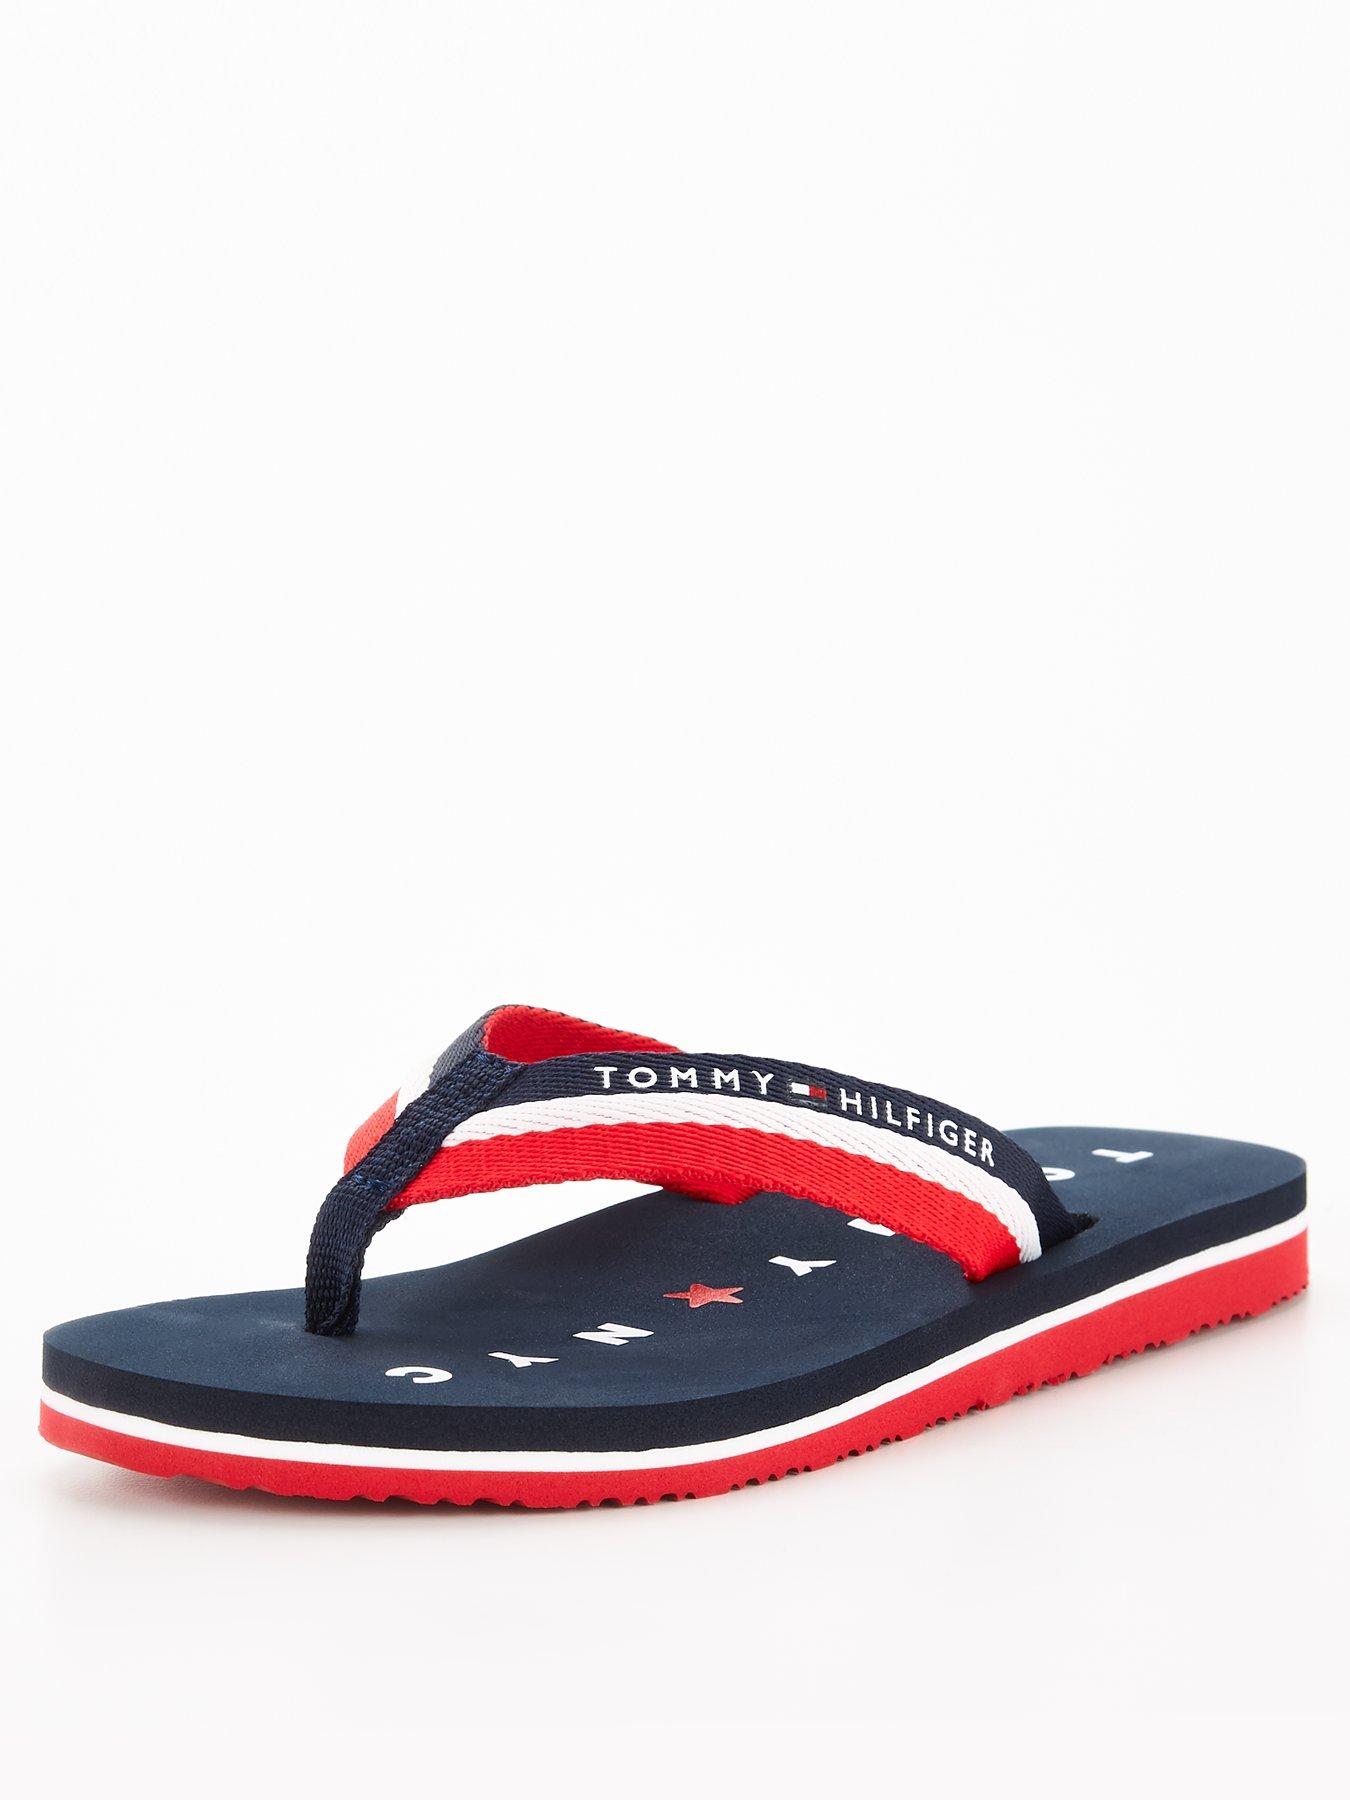 Tommy hilfiger | Sandals \u0026 flip flops 